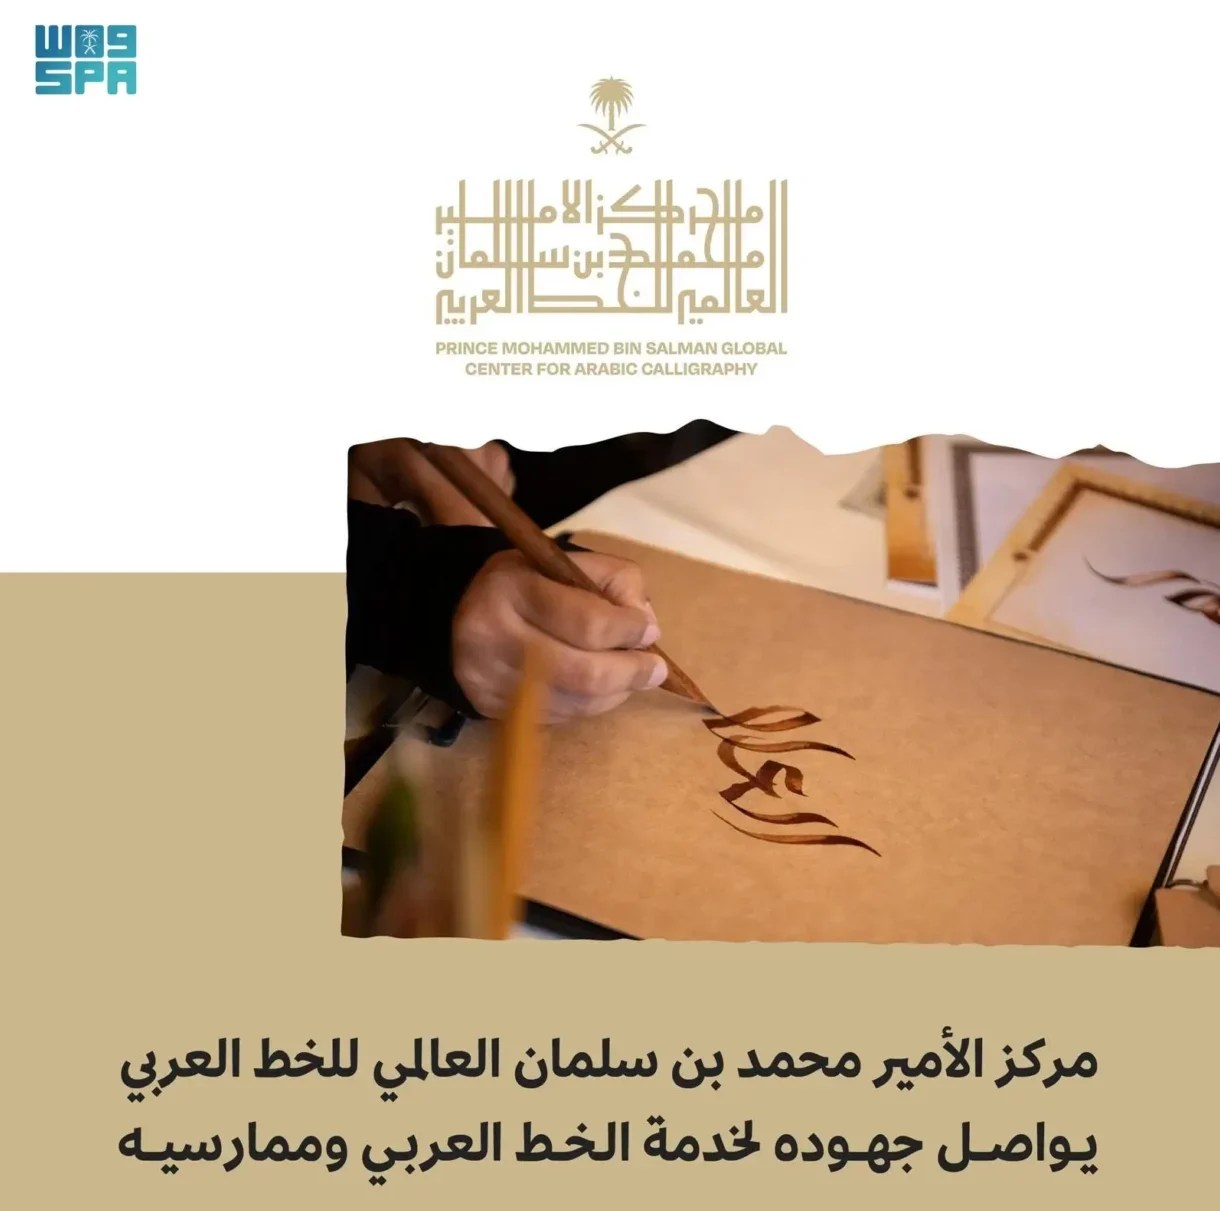 مركز الأمير محمد بن سلمان العالمي للخط العربي يهدف لخدمة الخط العربي